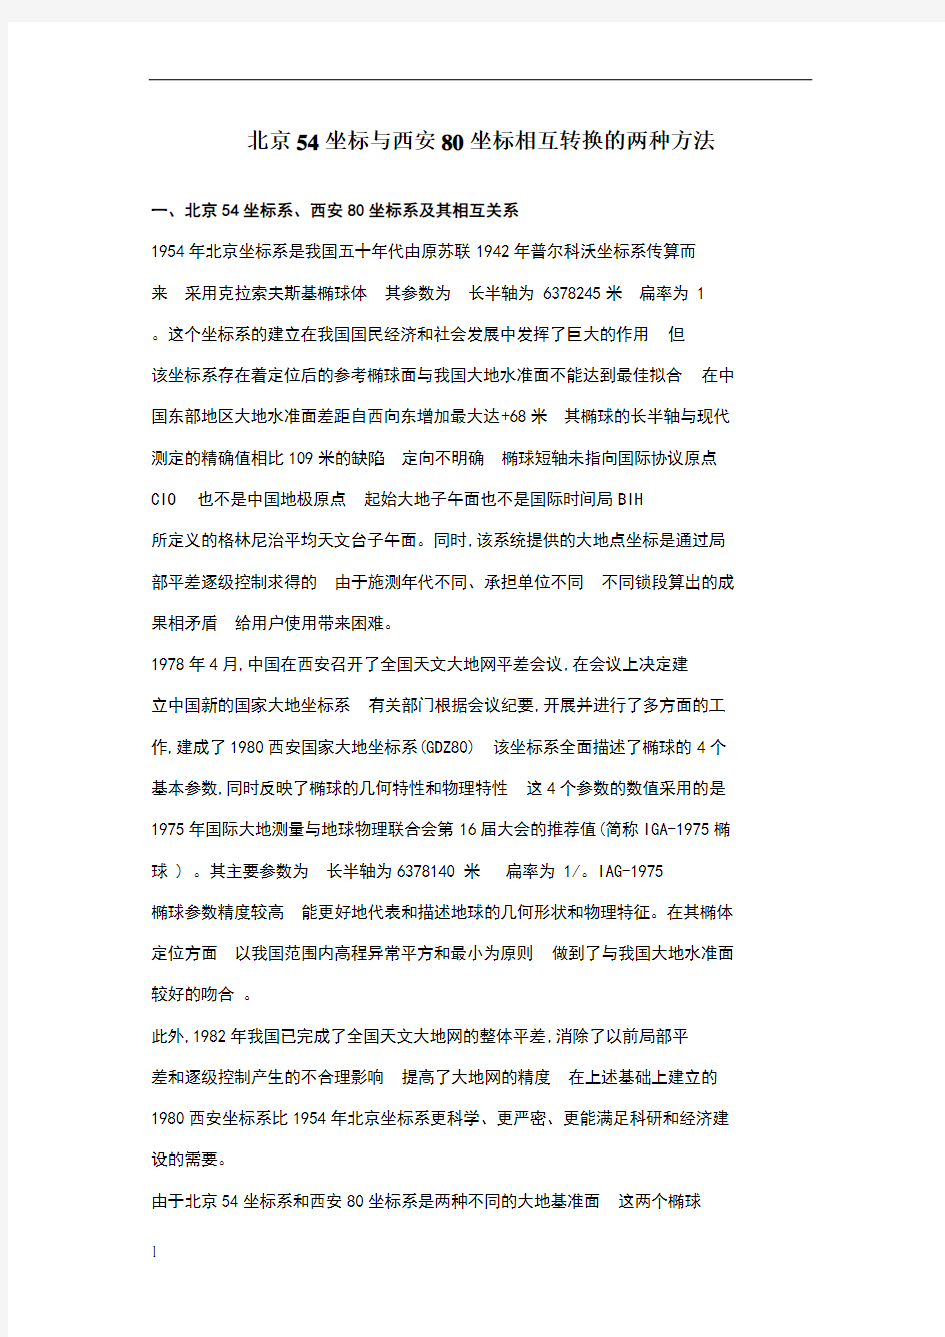 北京54坐标与西安80坐标相互转换的两种方法